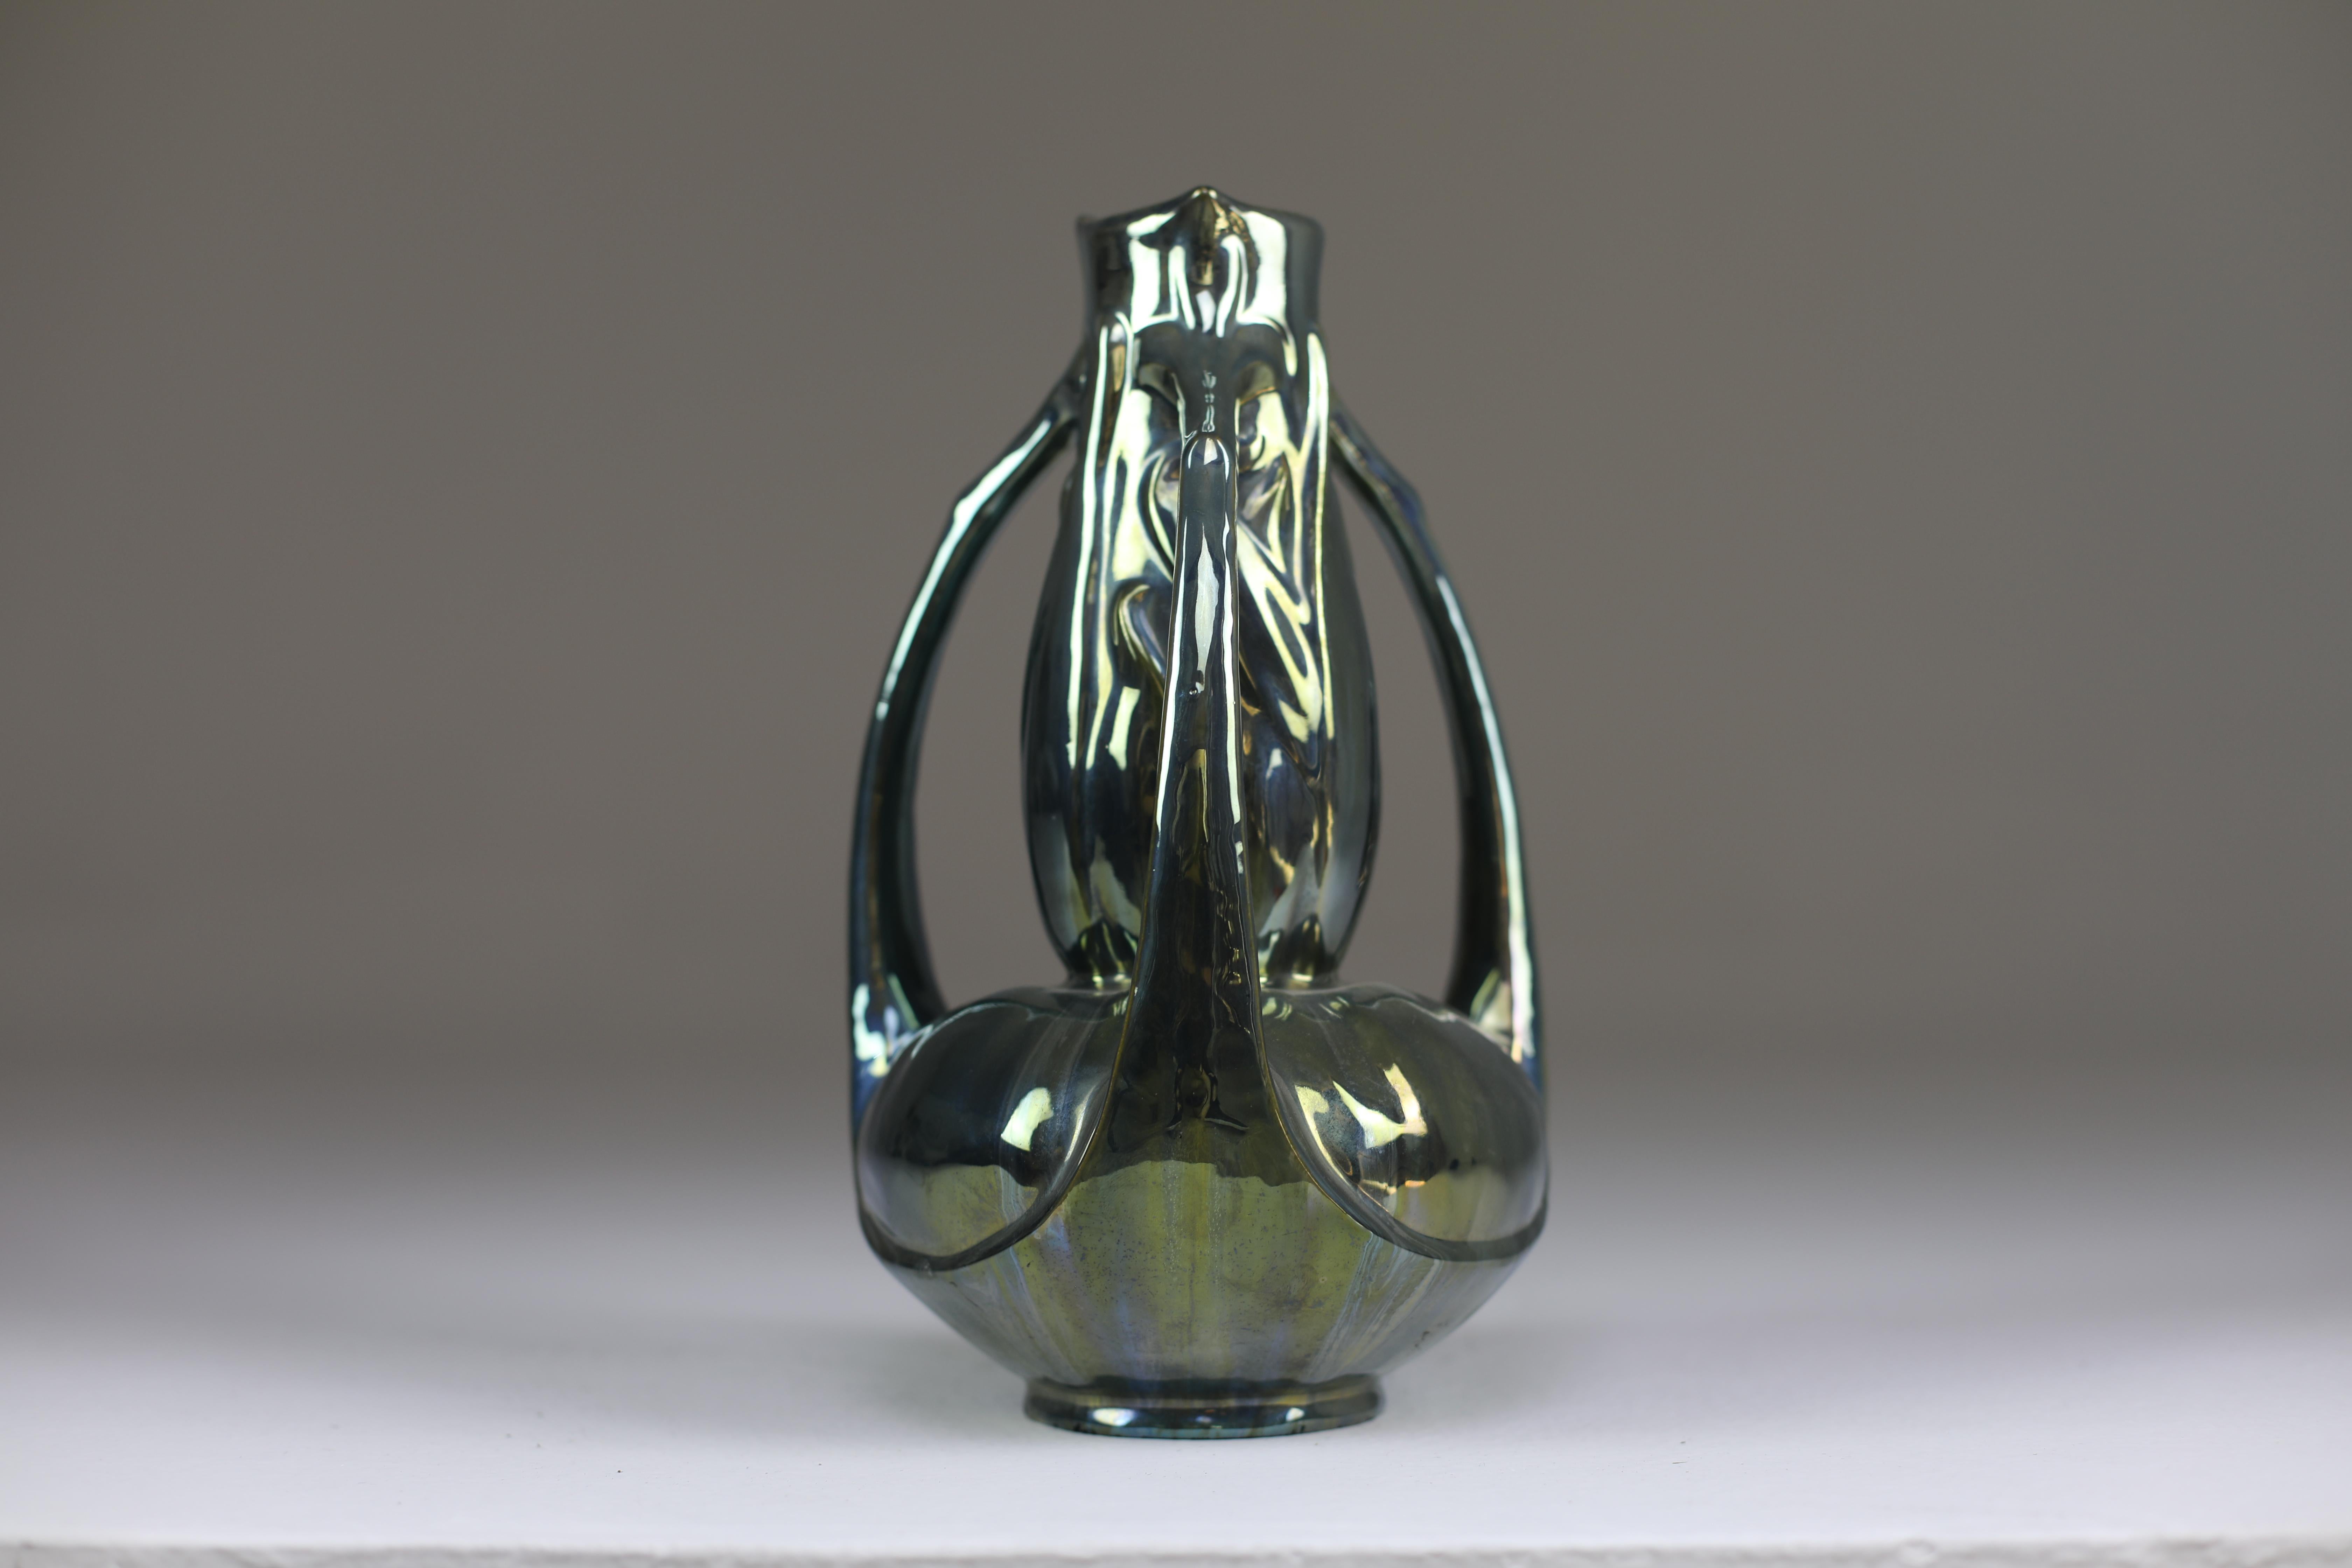 Un magnifique vase ancien en céramique fabriqué à la main par Alphonse Cytère, connu pour avoir développé cette finition métallique. 
Style Art nouveau typique. 
Ce modèle à trois poignées est rare. Signé à la base.
1890-1910. 

------

Nous sommes